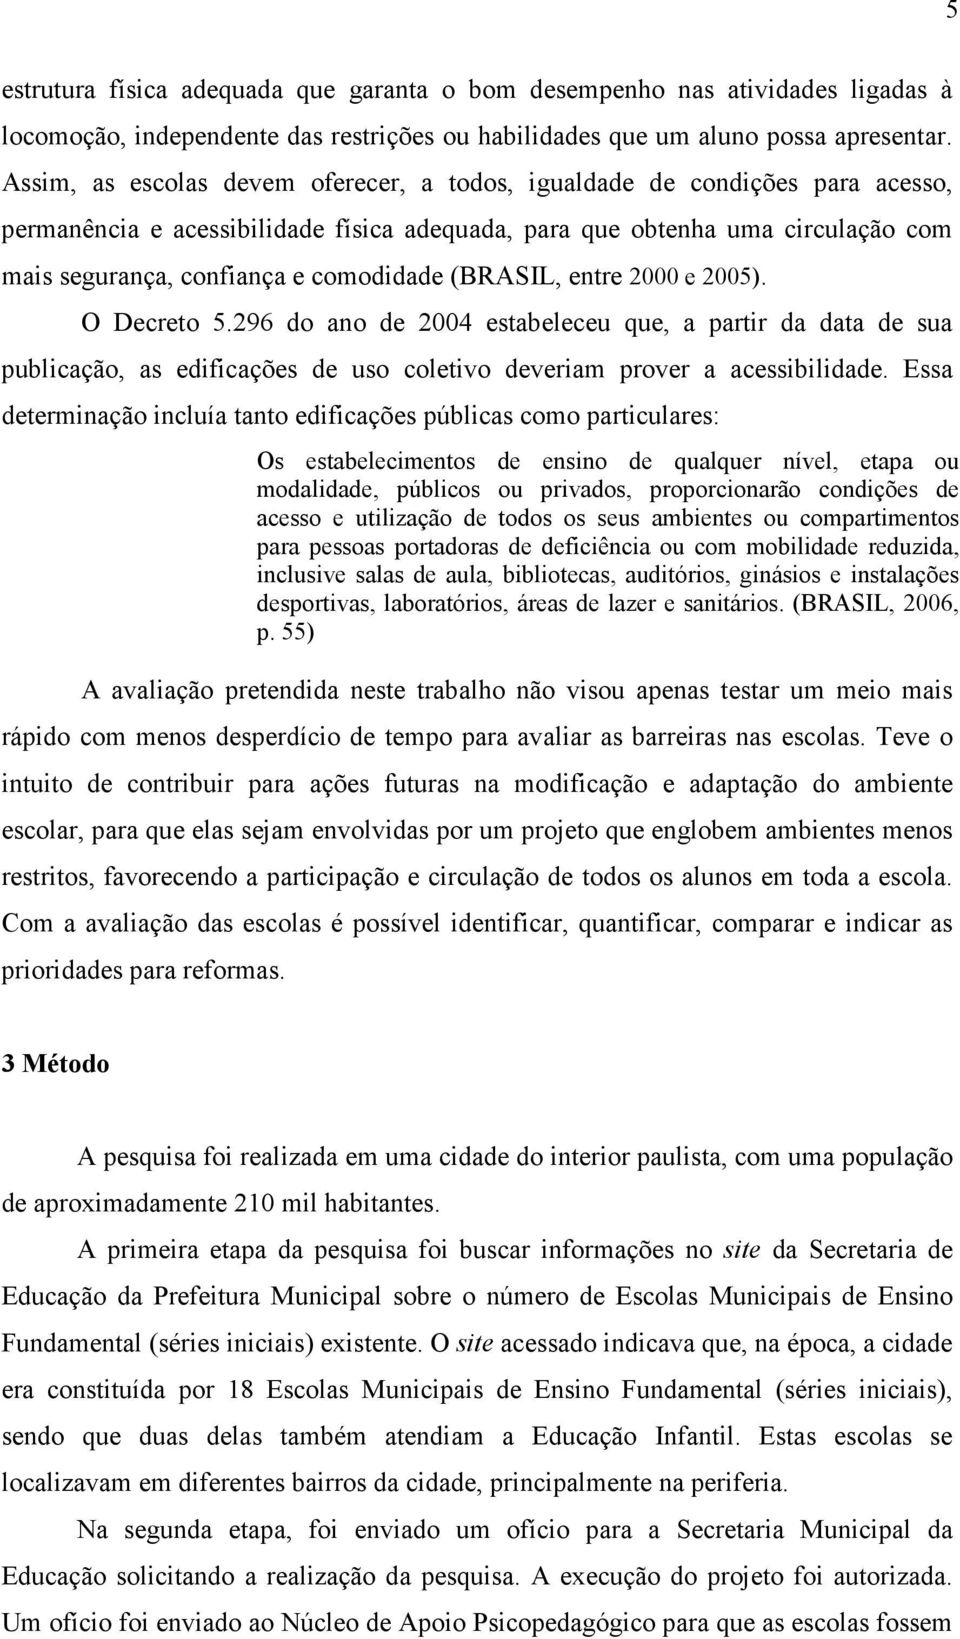 (BRASIL, entre 2000 e 2005). O Decreto 5.296 do ano de 2004 estabeleceu que, a partir da data de sua publicação, as edificações de uso coletivo deveriam prover a acessibilidade.